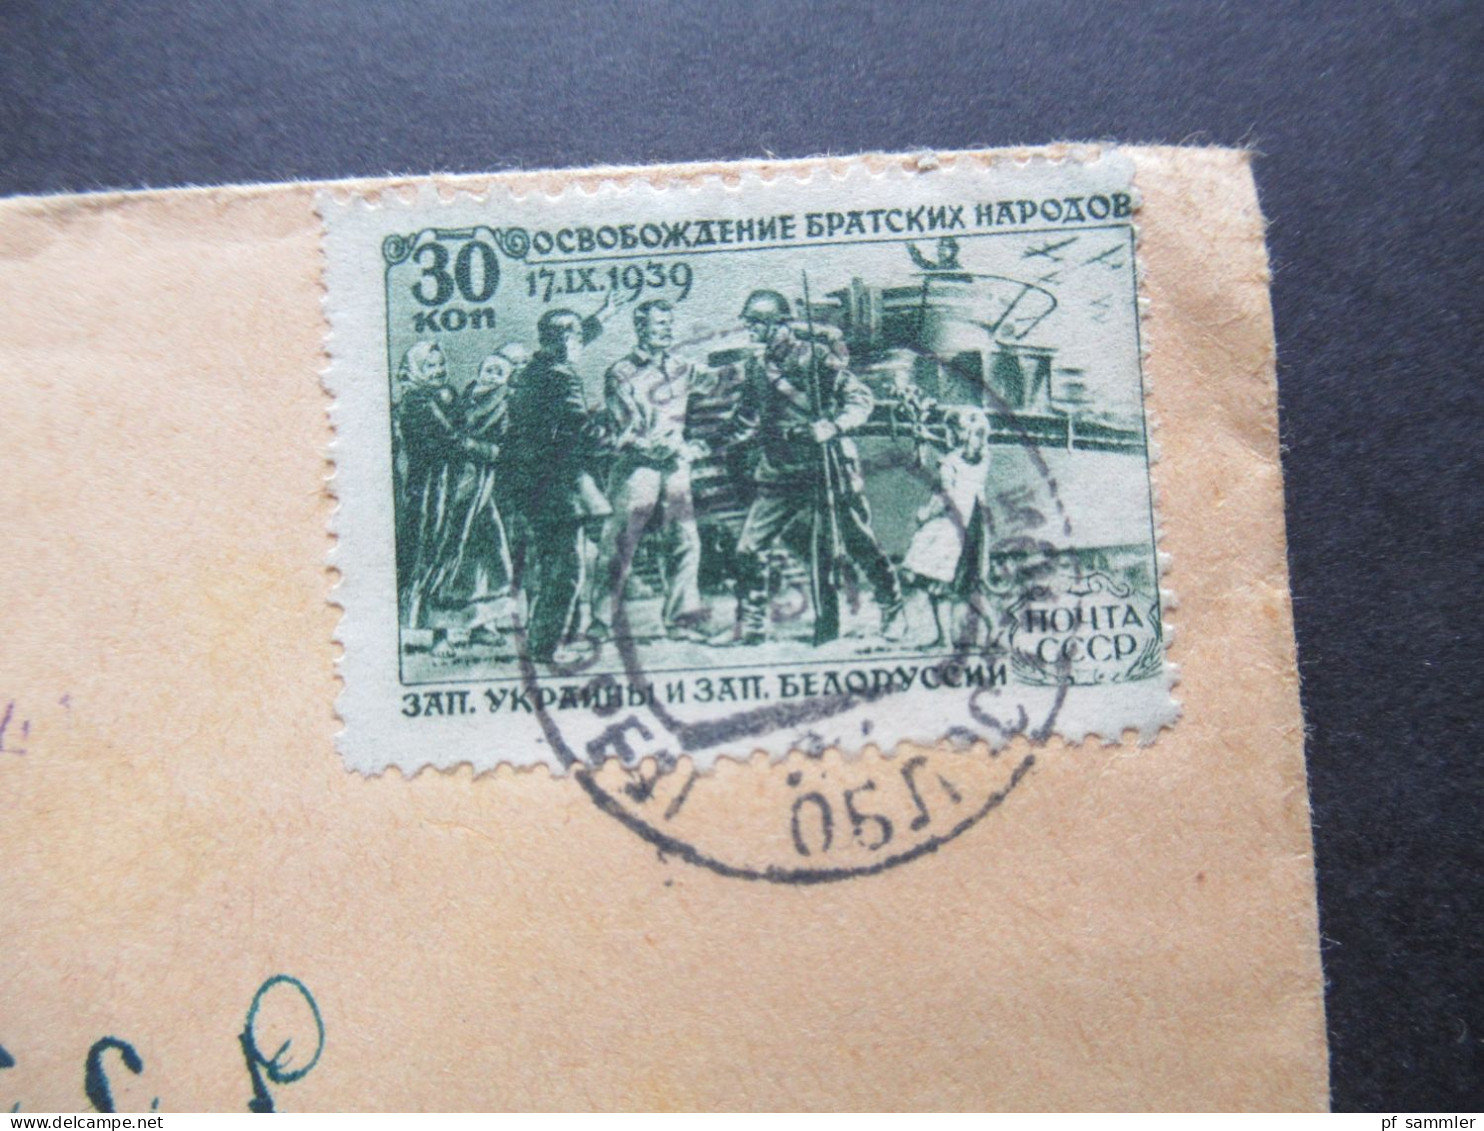 Rußland UdSSR 1940 / 1941 Nr.737 EF / Wiedereingliederung Der Westukraine / Soldaten Der Roten Armee - Covers & Documents